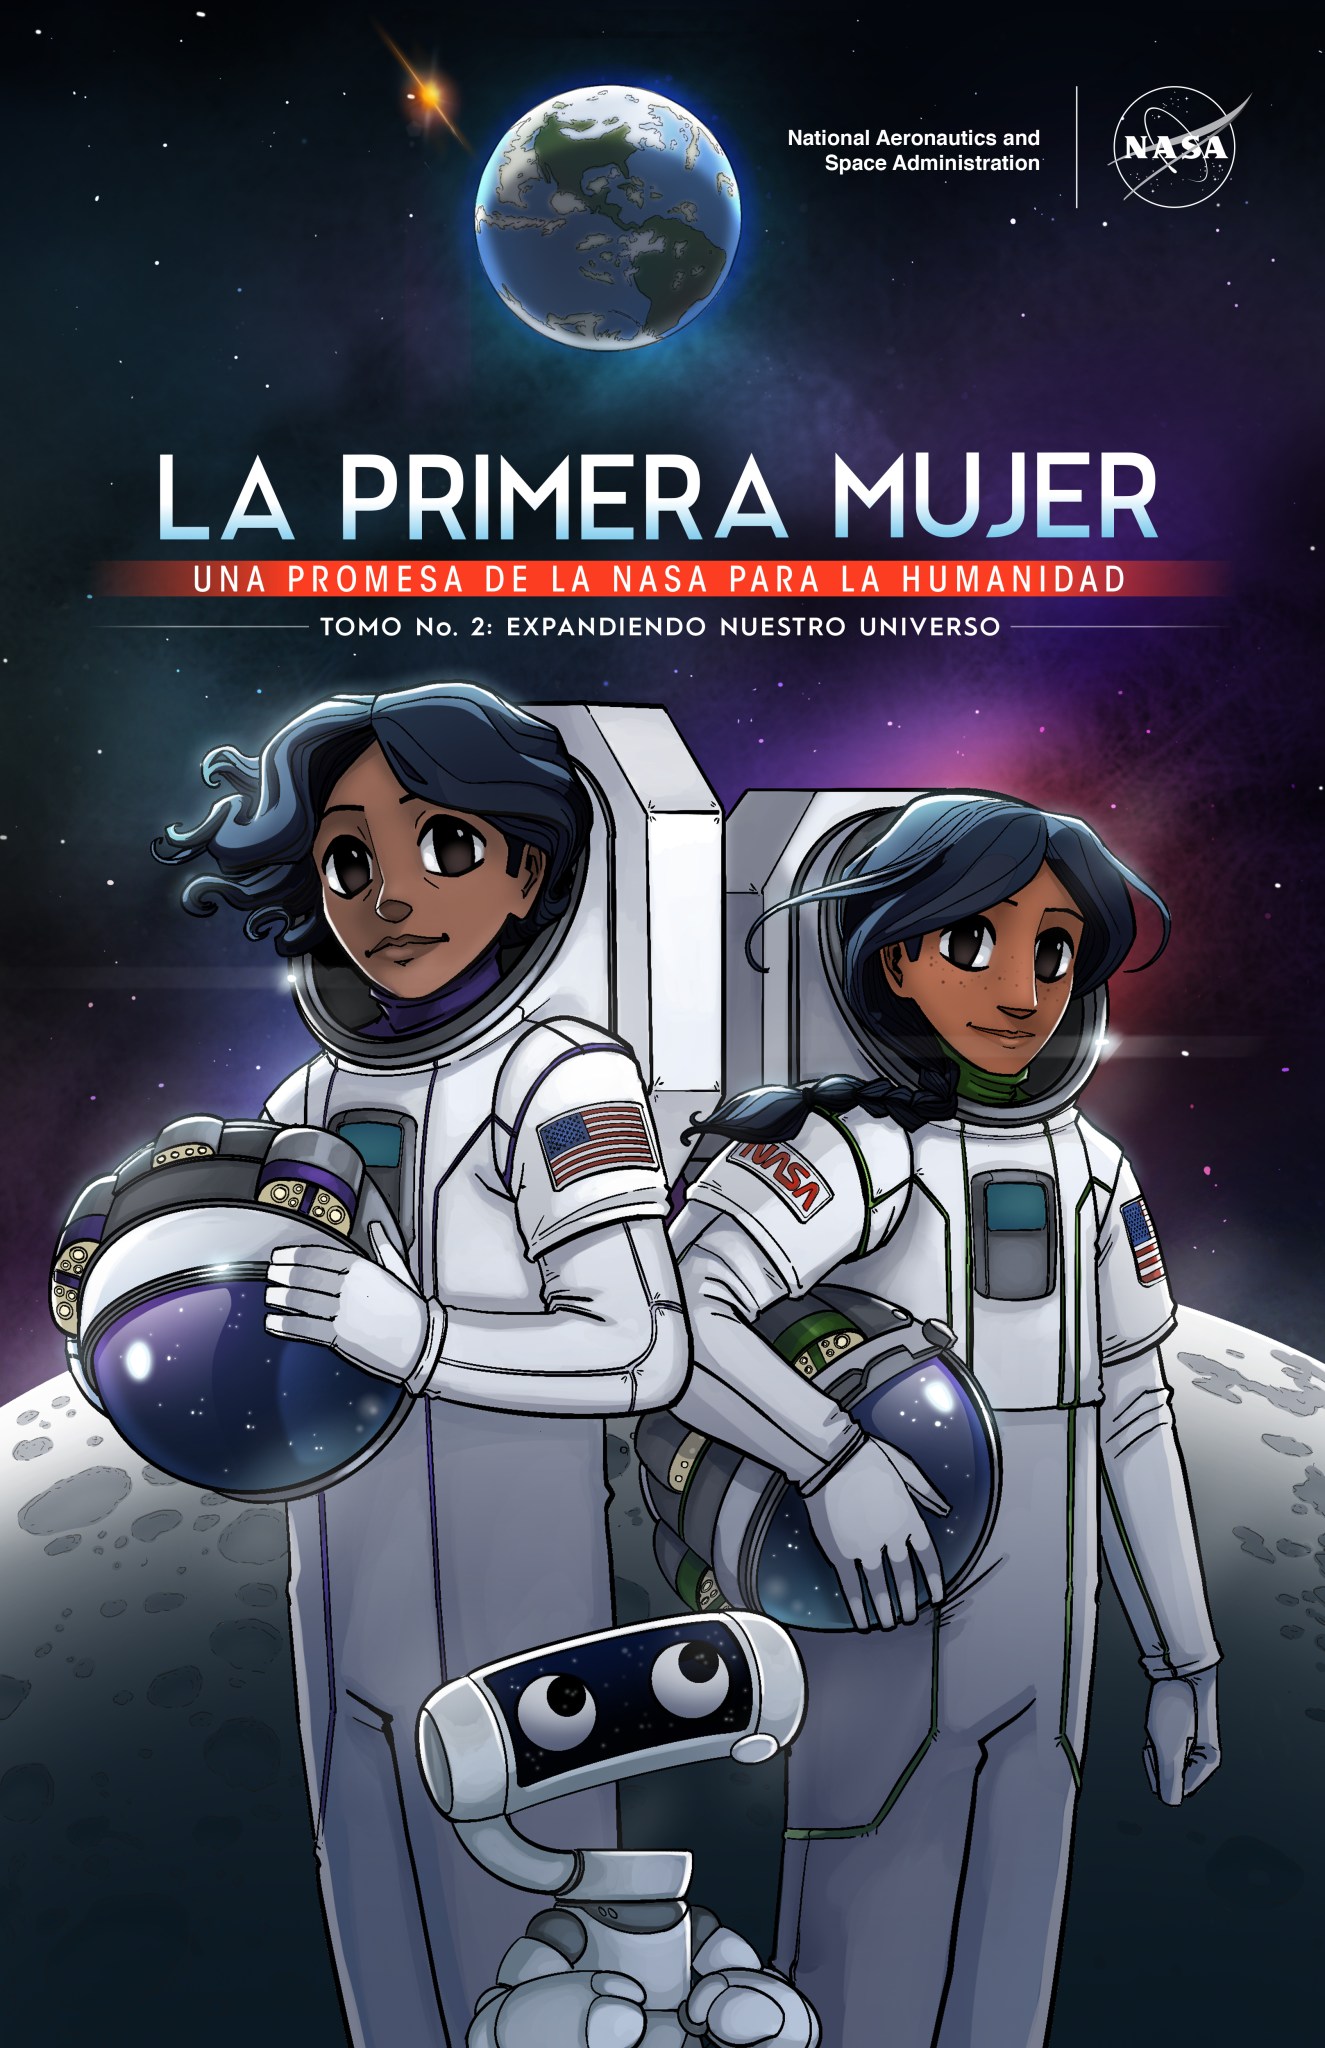 La astronauta Callie Rodríguez continúa sus aventuras espaciales como la primera mujer en pisar la Luna en la nueva novela gráfica de la NASA, “La primera mujer: Expandiendo nuestro universo”.